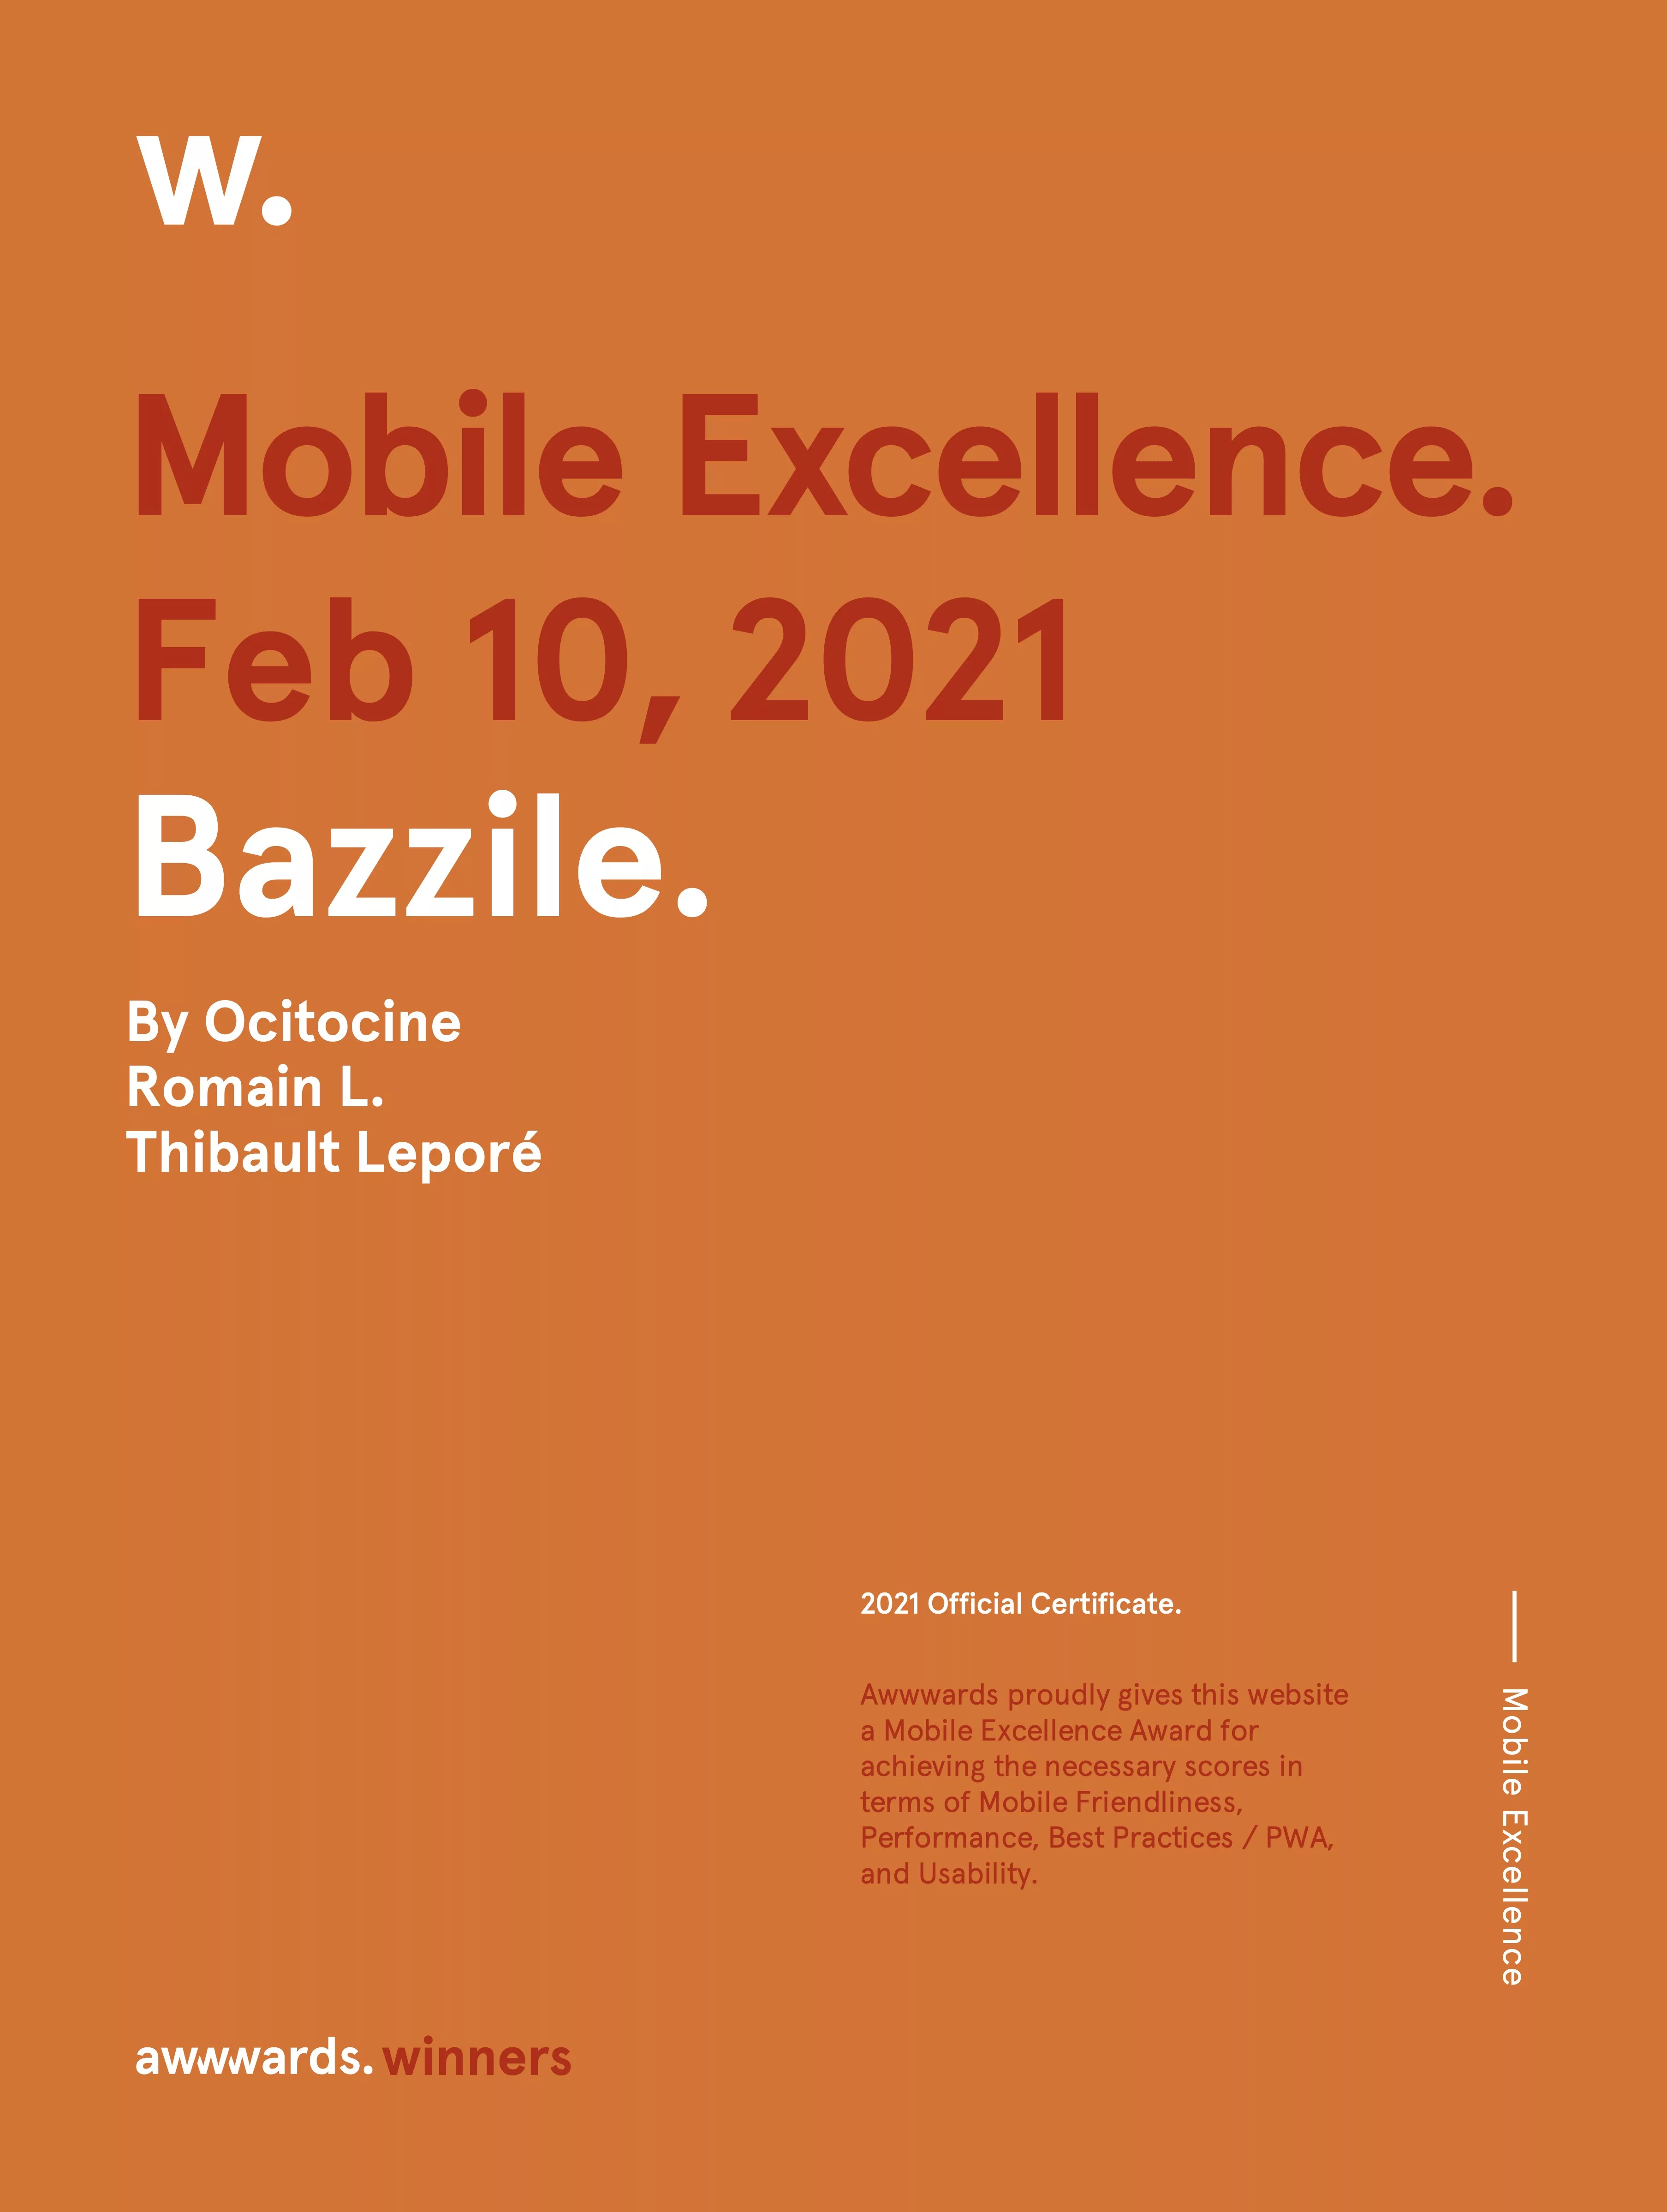 Ocitocine, agence créative web et branding, a remporté un prix "Awwwards Mobile Excellence" pour la réalisation du site web bazzile.ch